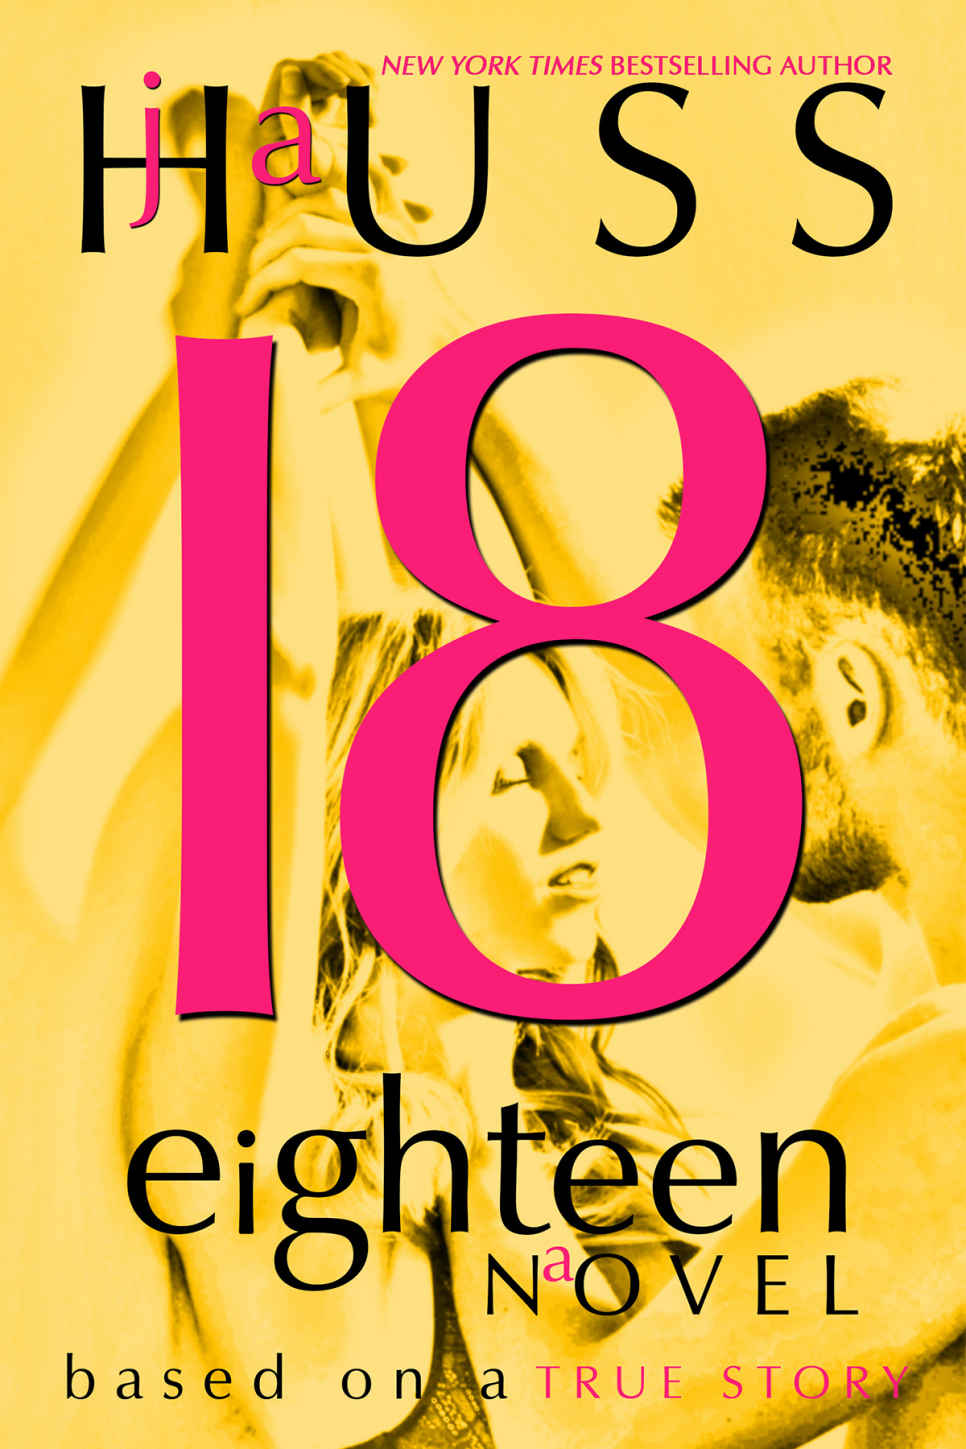 Eighteen (18) by J.A. Huss